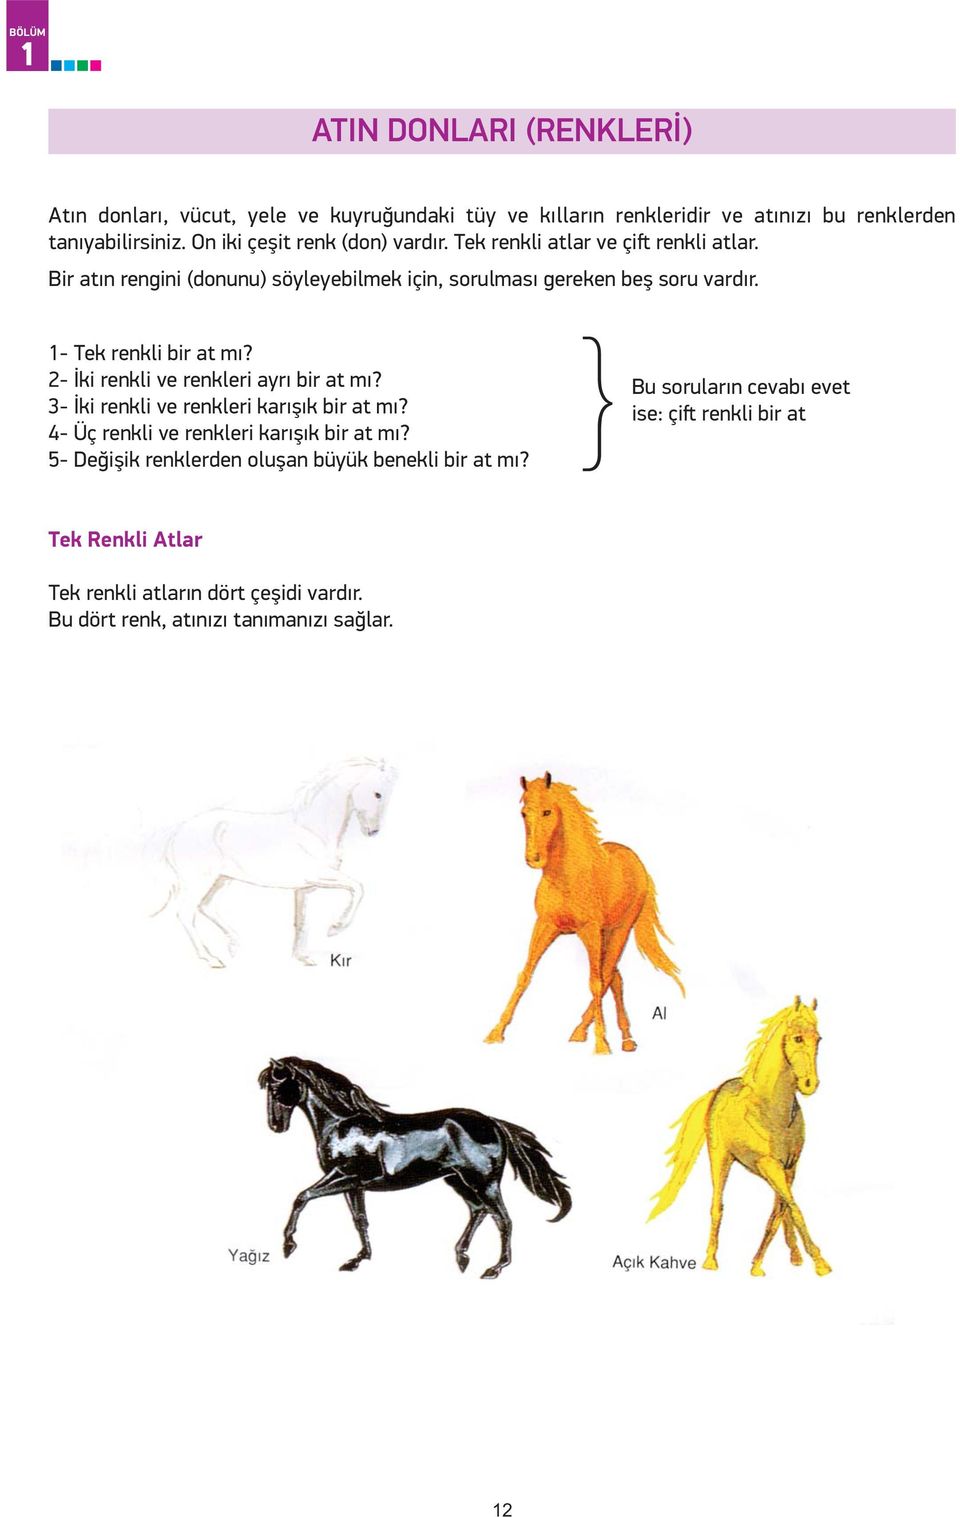 1- Tek renkli bir at mı? 2- İki renkli ve renkleri ayrı bir at mı? 3- İki renkli ve renkleri karışık bir at mı? 4- Üç renkli ve renkleri karışık bir at mı?